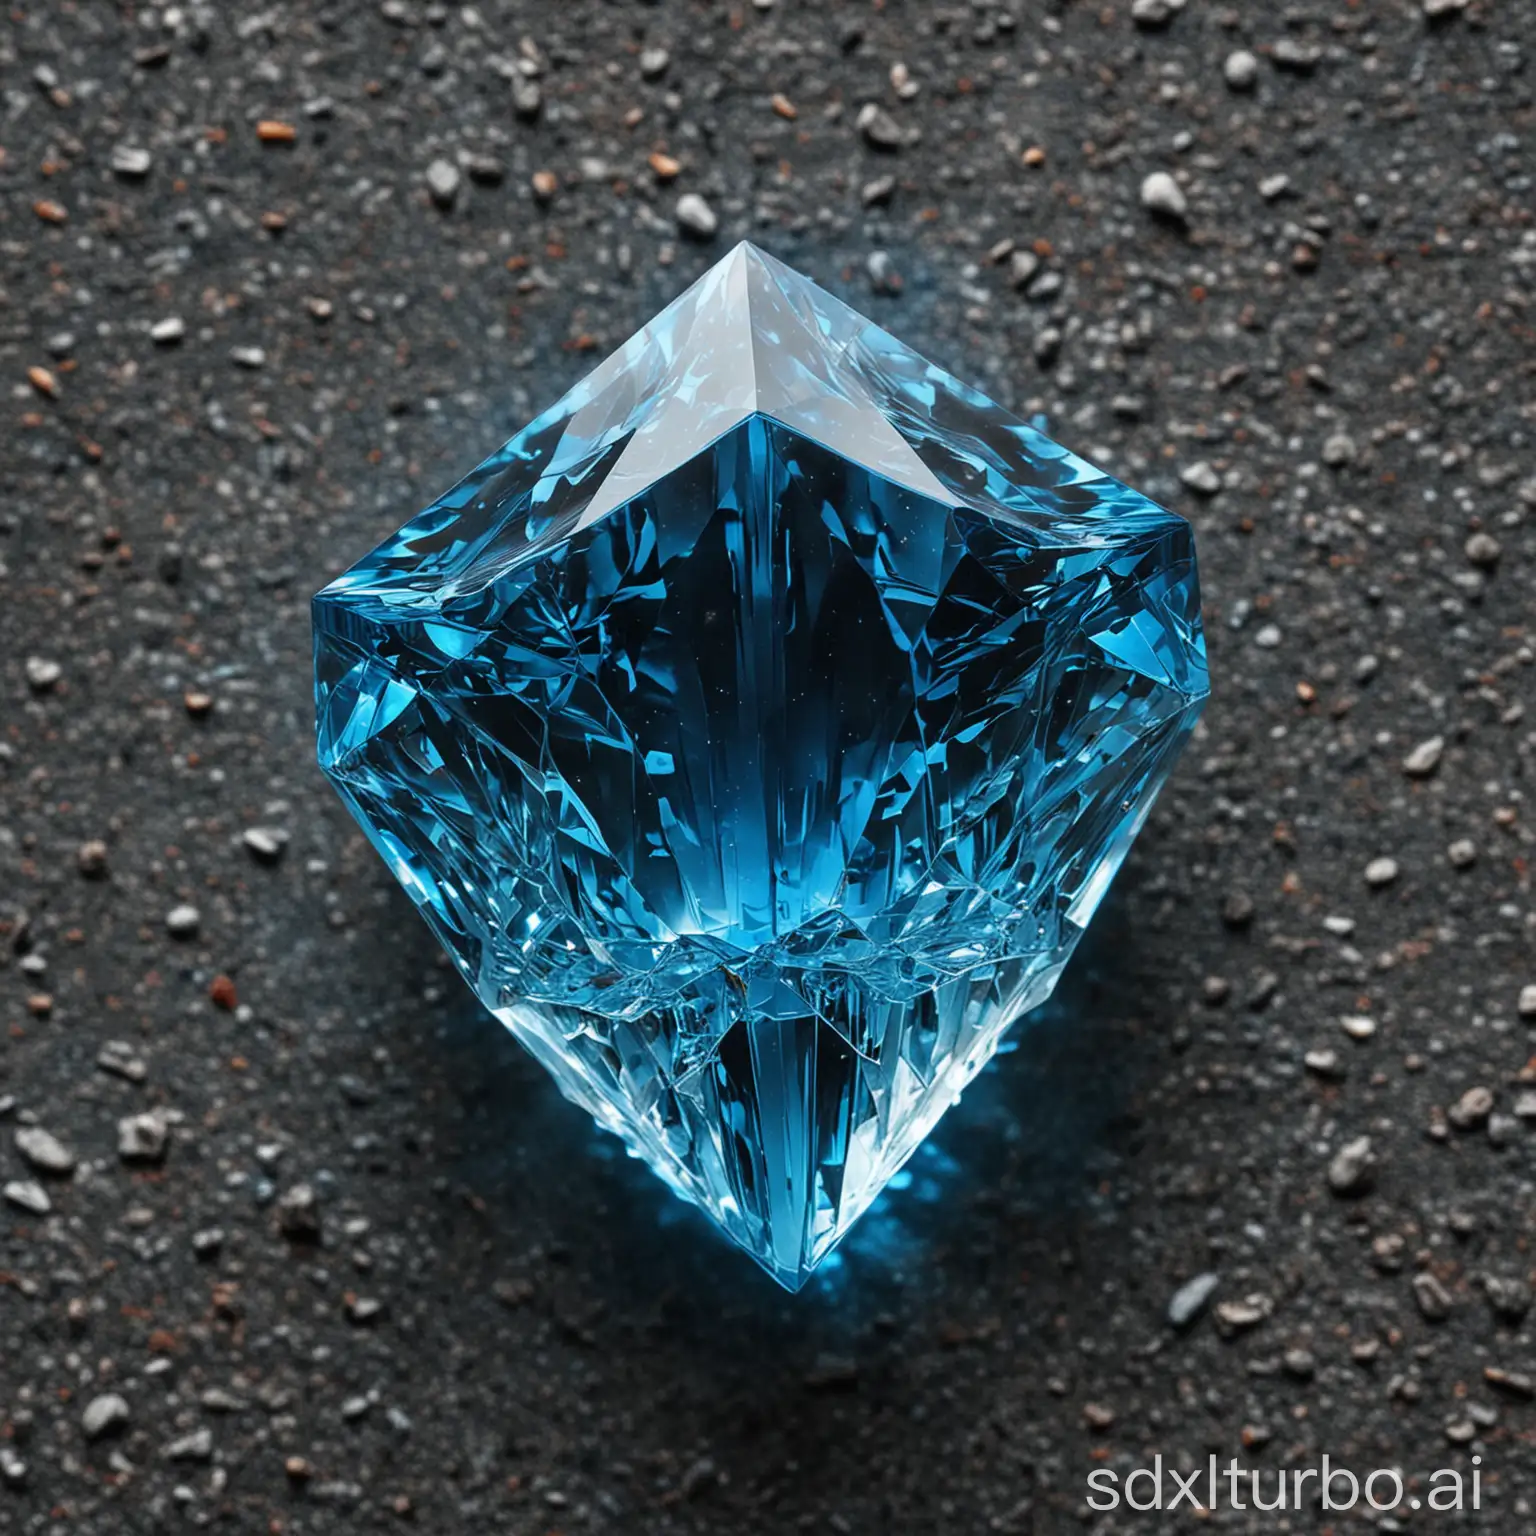 a big blue kristall